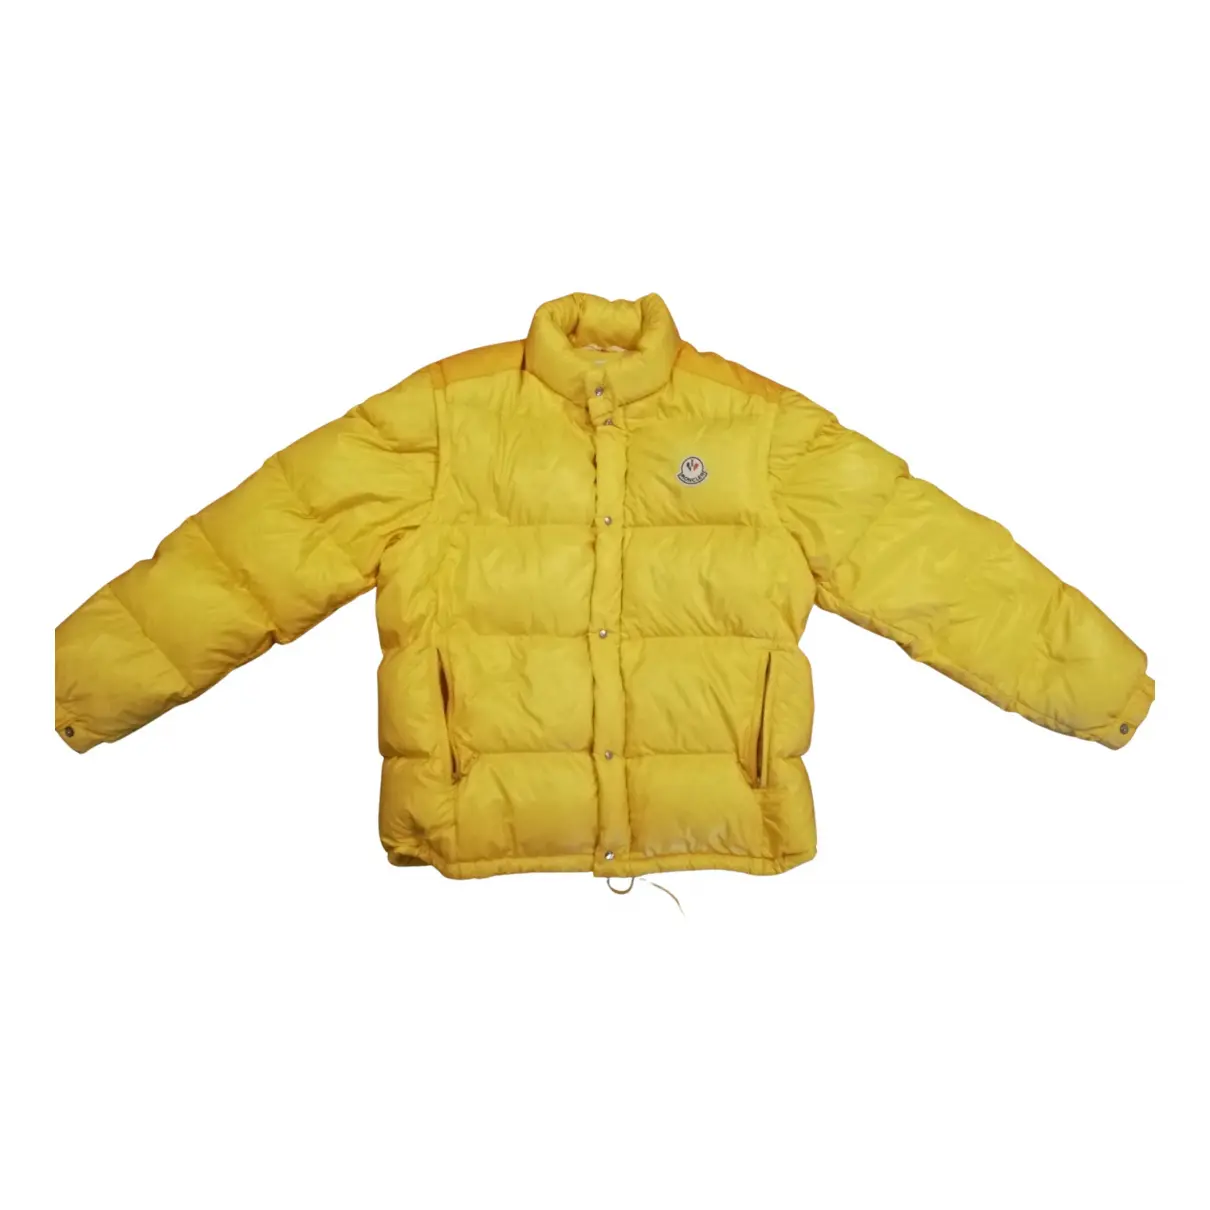 Grenoble jacket Moncler - Vintage